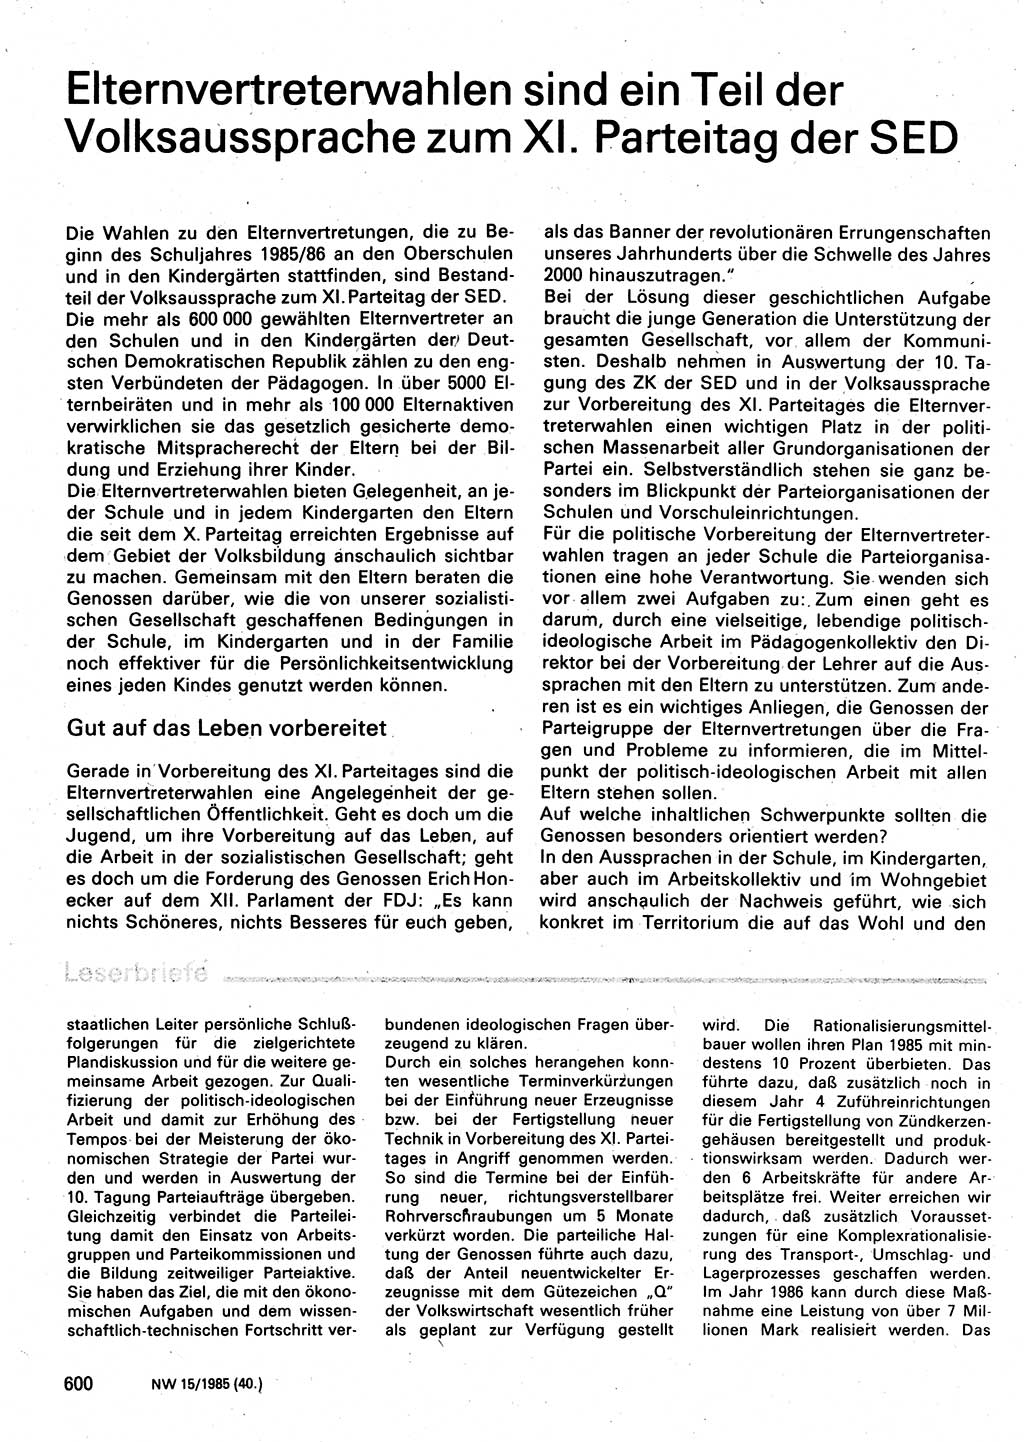 Neuer Weg (NW), Organ des Zentralkomitees (ZK) der SED (Sozialistische Einheitspartei Deutschlands) für Fragen des Parteilebens, 40. Jahrgang [Deutsche Demokratische Republik (DDR)] 1985, Seite 600 (NW ZK SED DDR 1985, S. 600)